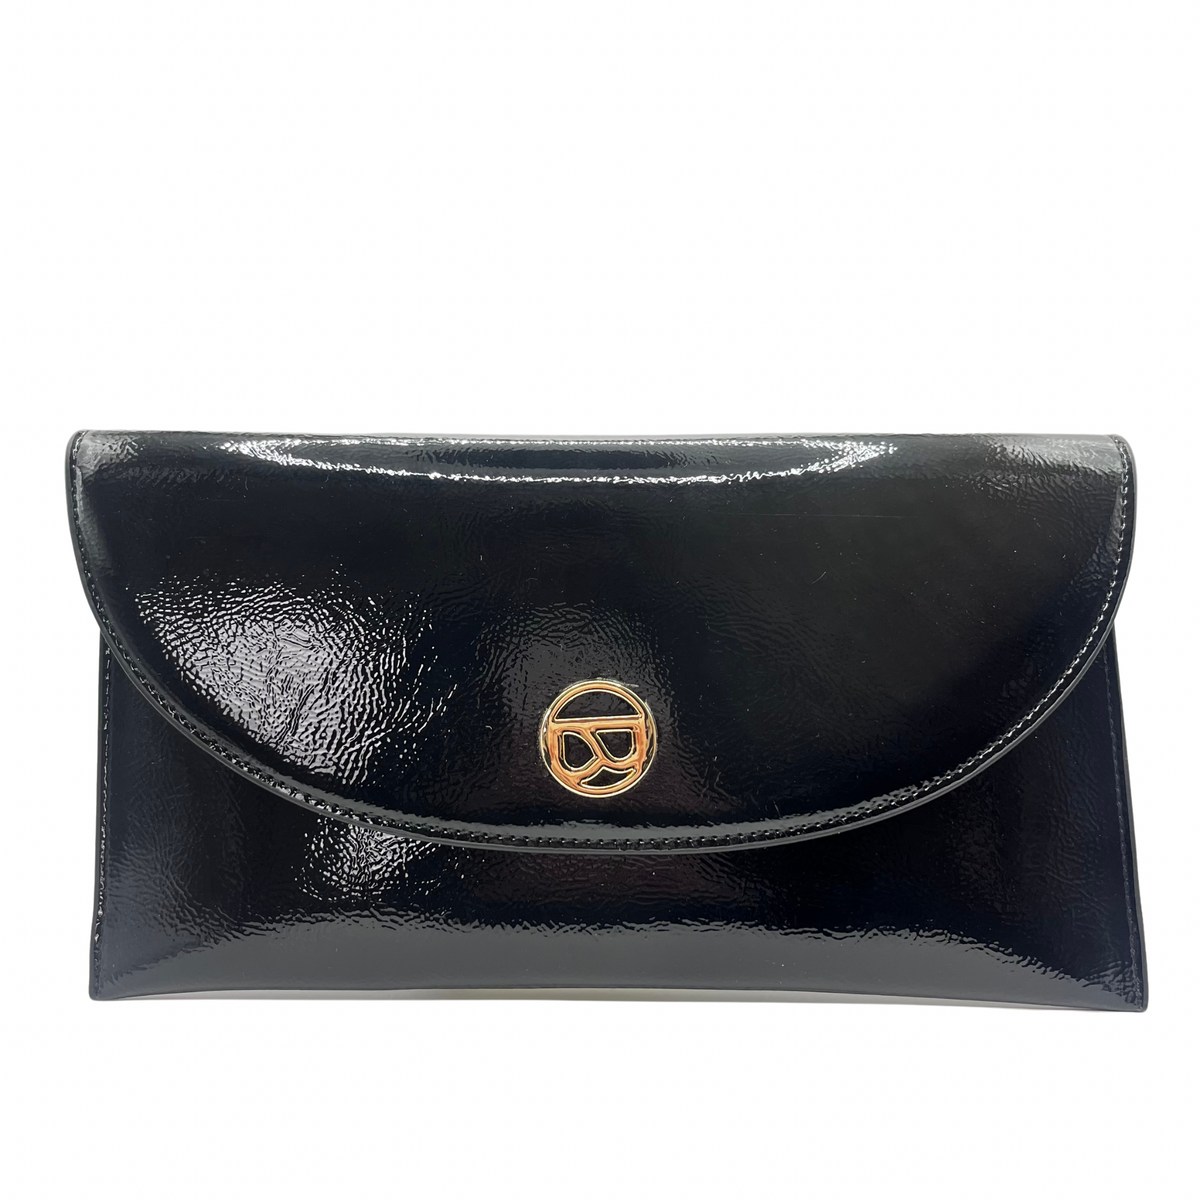 Binnari Black Clutch Bag